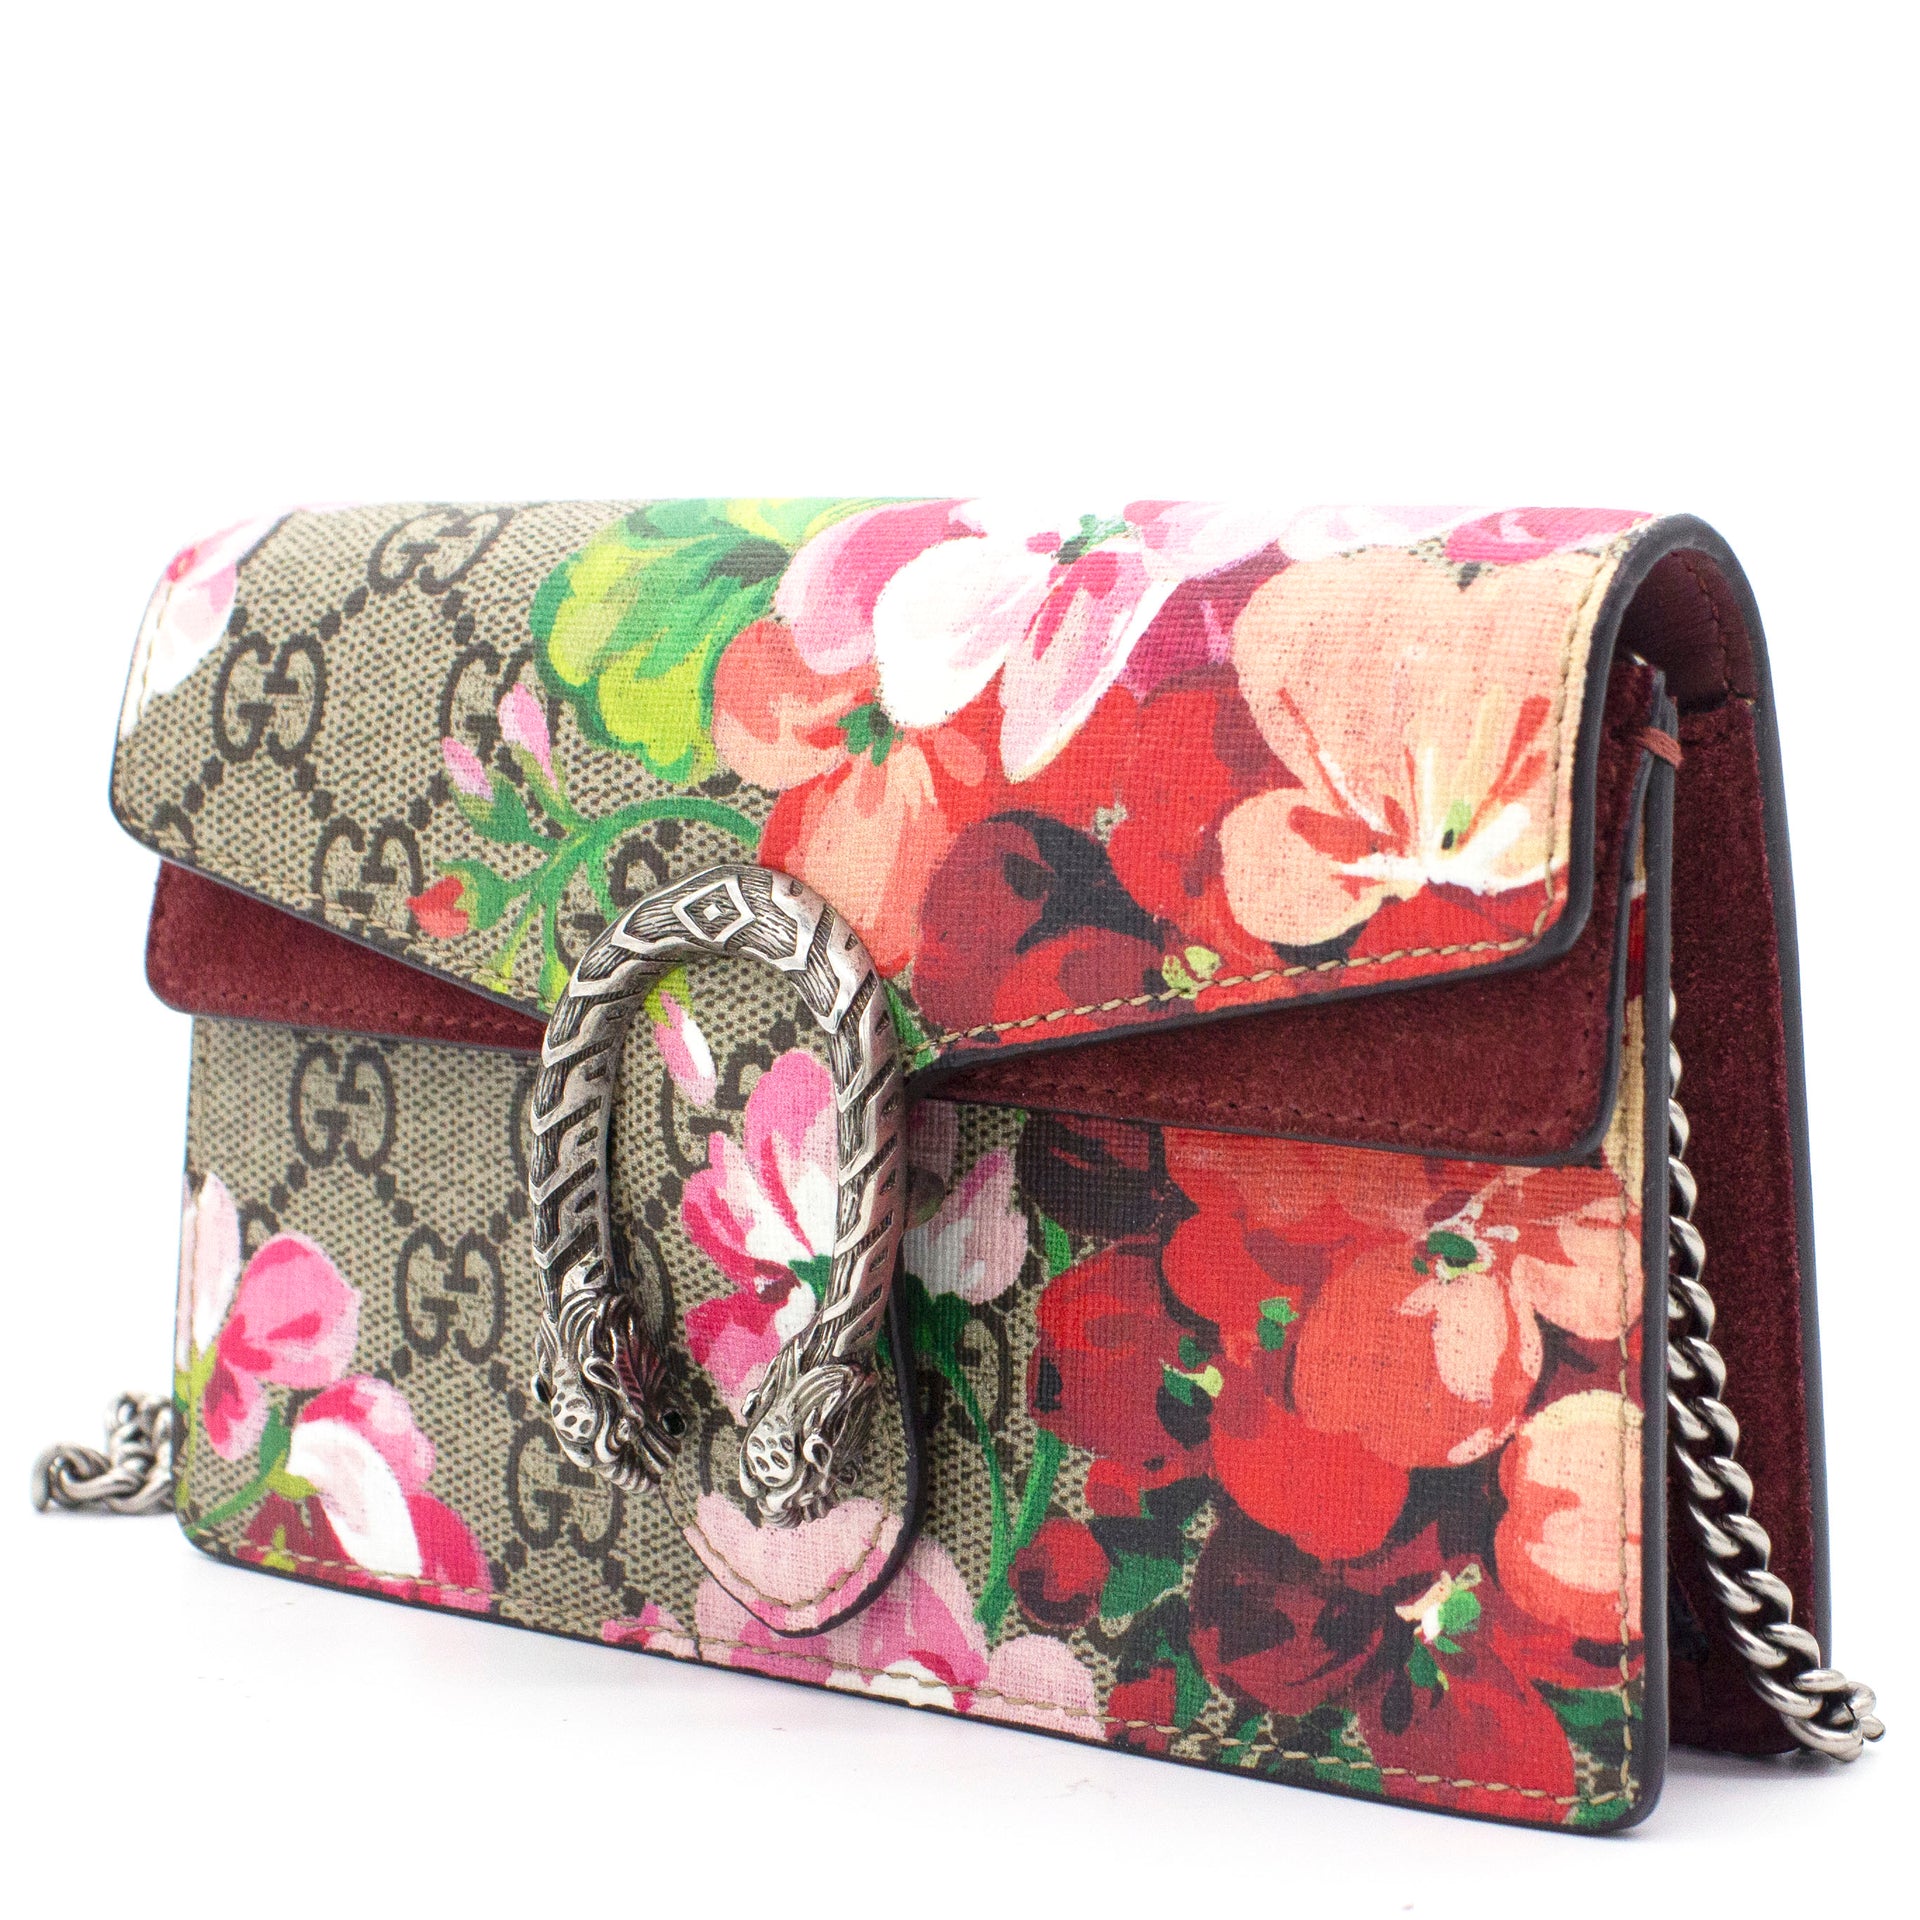 Dionysus GG Blooms super mini bag